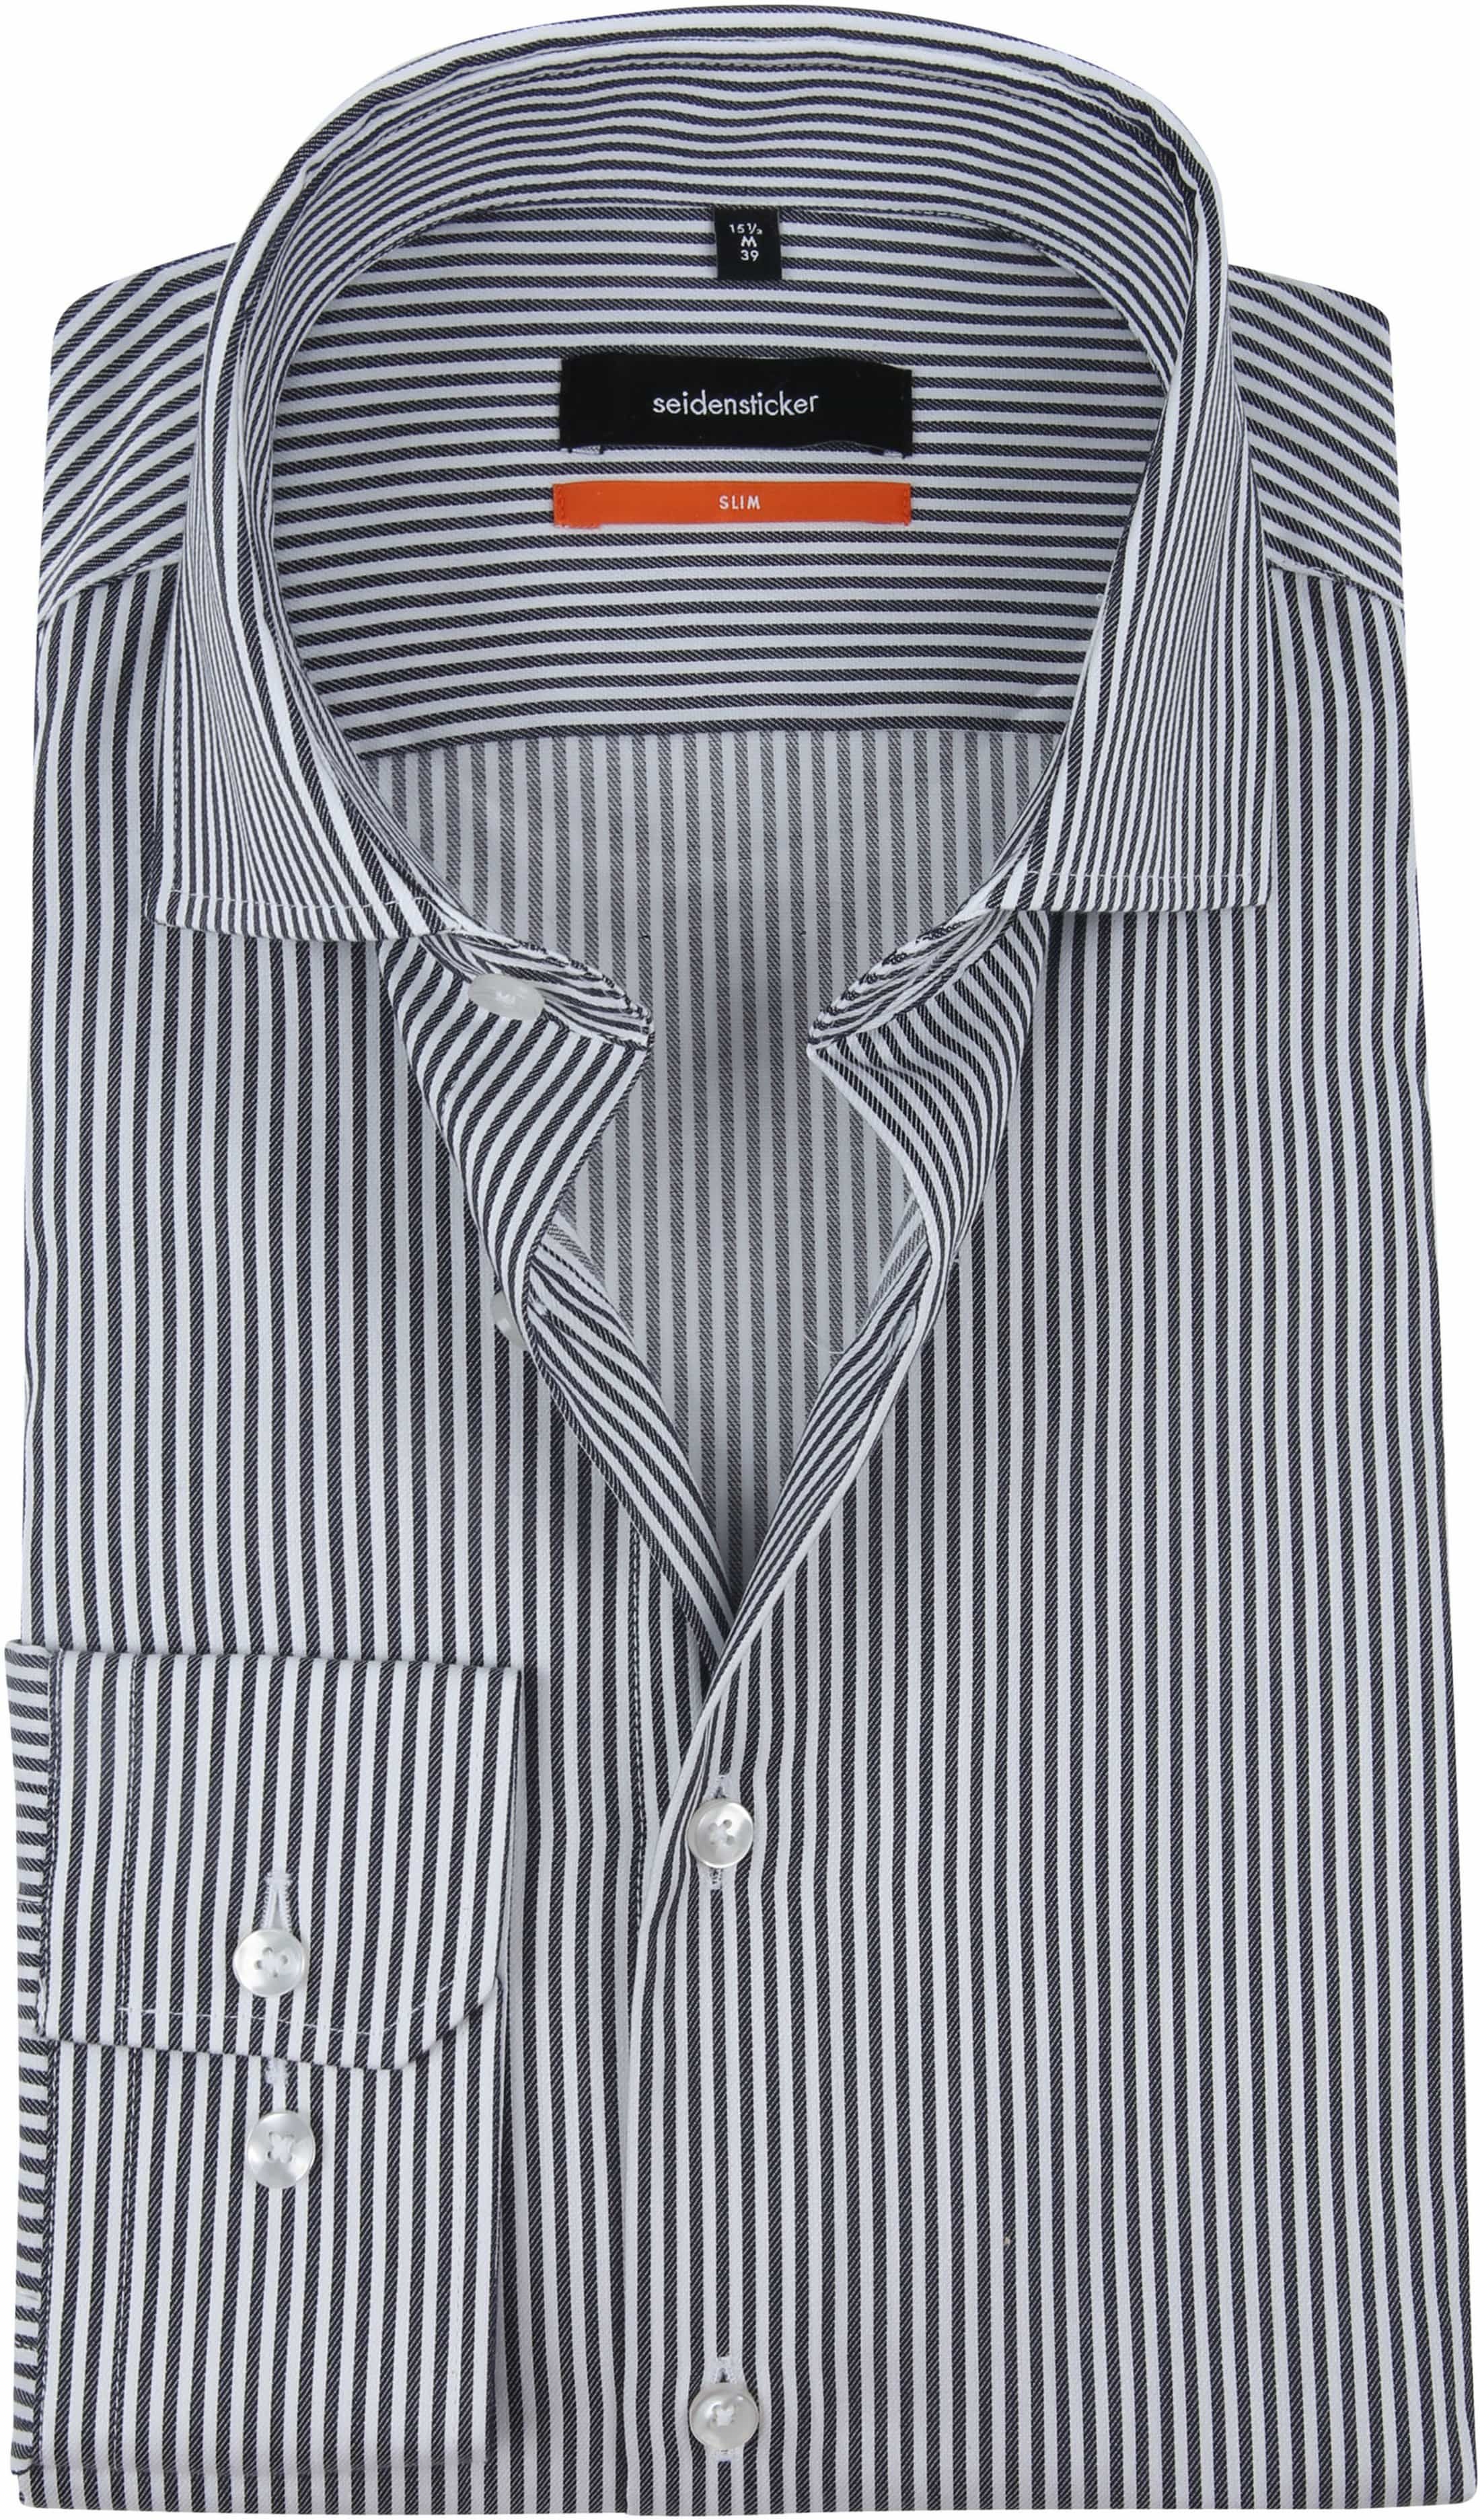 Seidensticker SF Shirt Stripes Navy Blue Dark Blue size 15 1/2